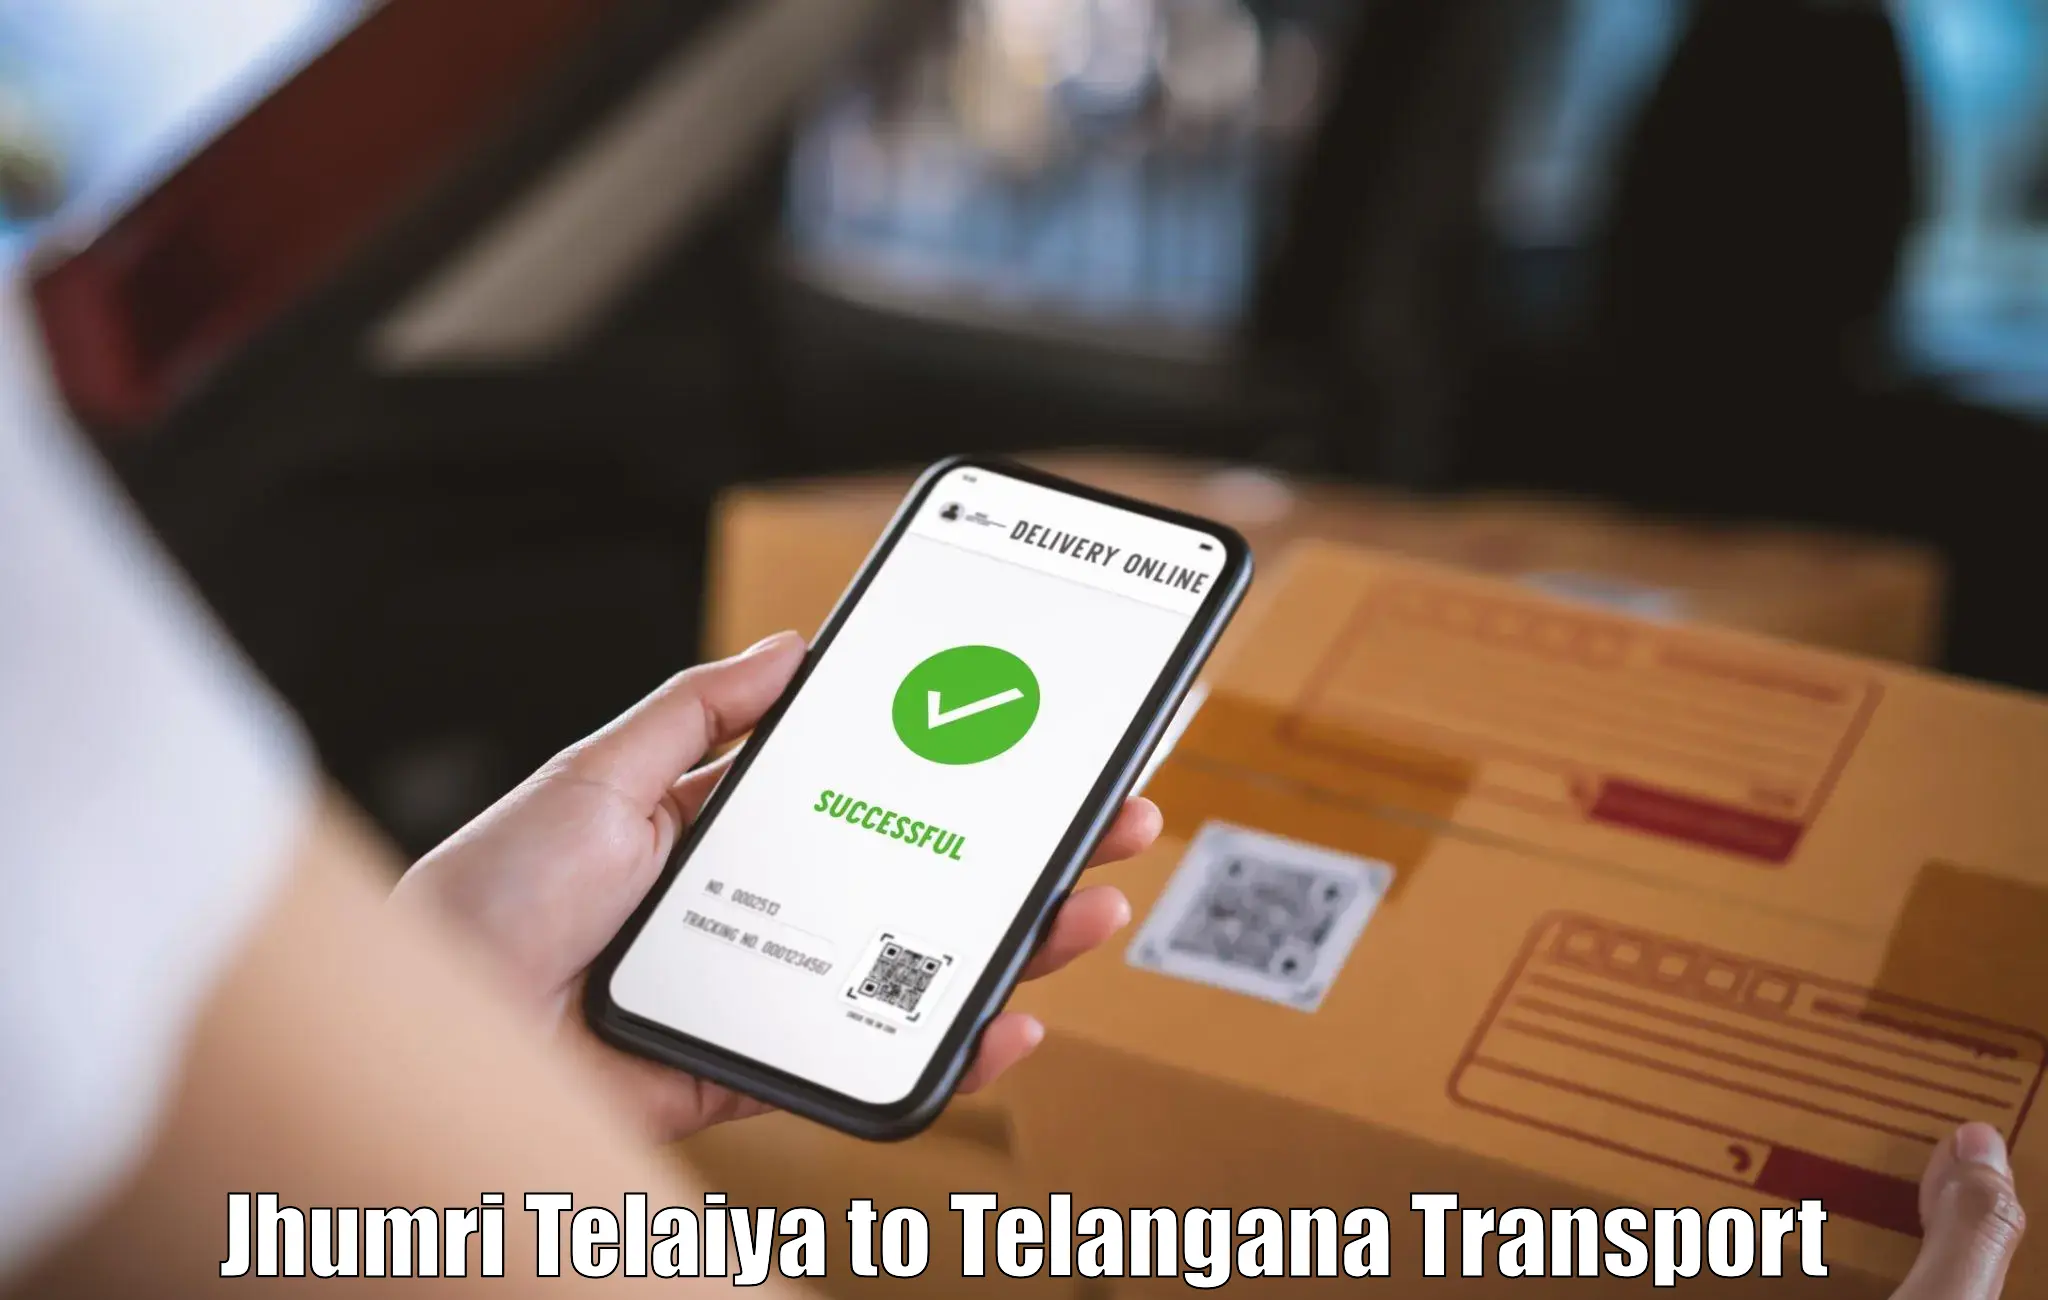 Parcel transport services Jhumri Telaiya to Jannaram